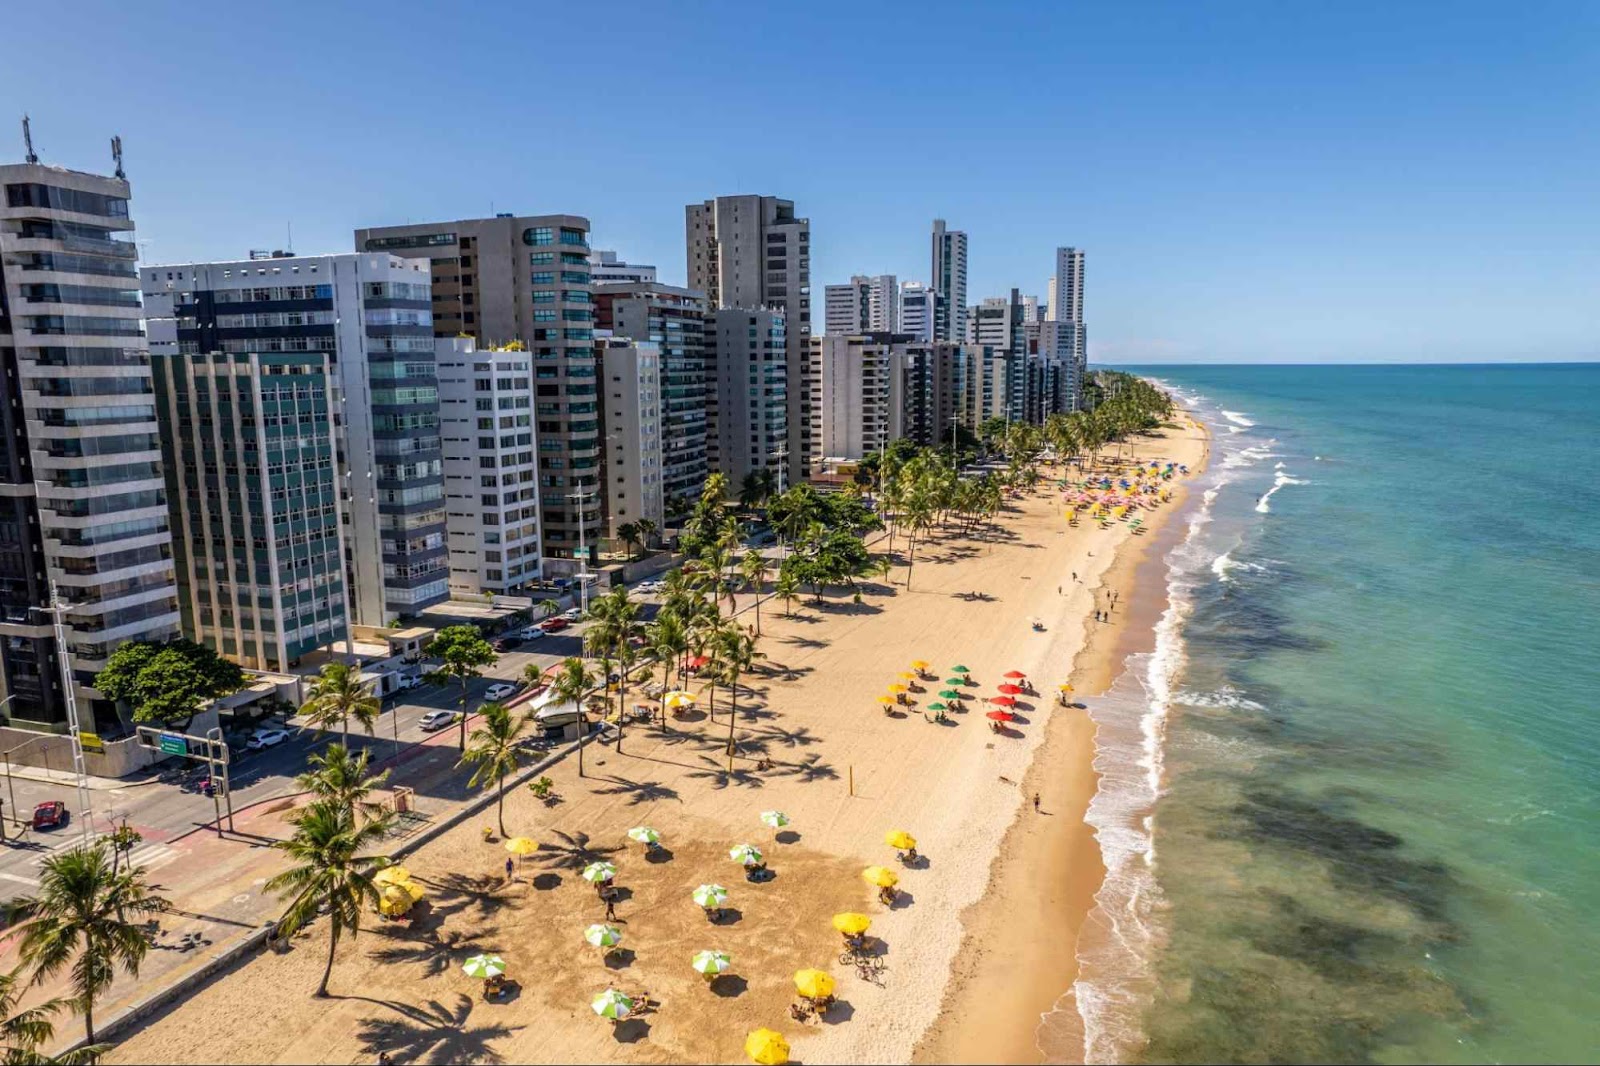 Praia de Boa Viagem, Recife. A longa faixa de areia tem alguns guarda-sóis coloridos e poucos coqueiros. Ela é delimitada pelo mar esverdeado de um lado e por uma fileira de prédios altos do outro.